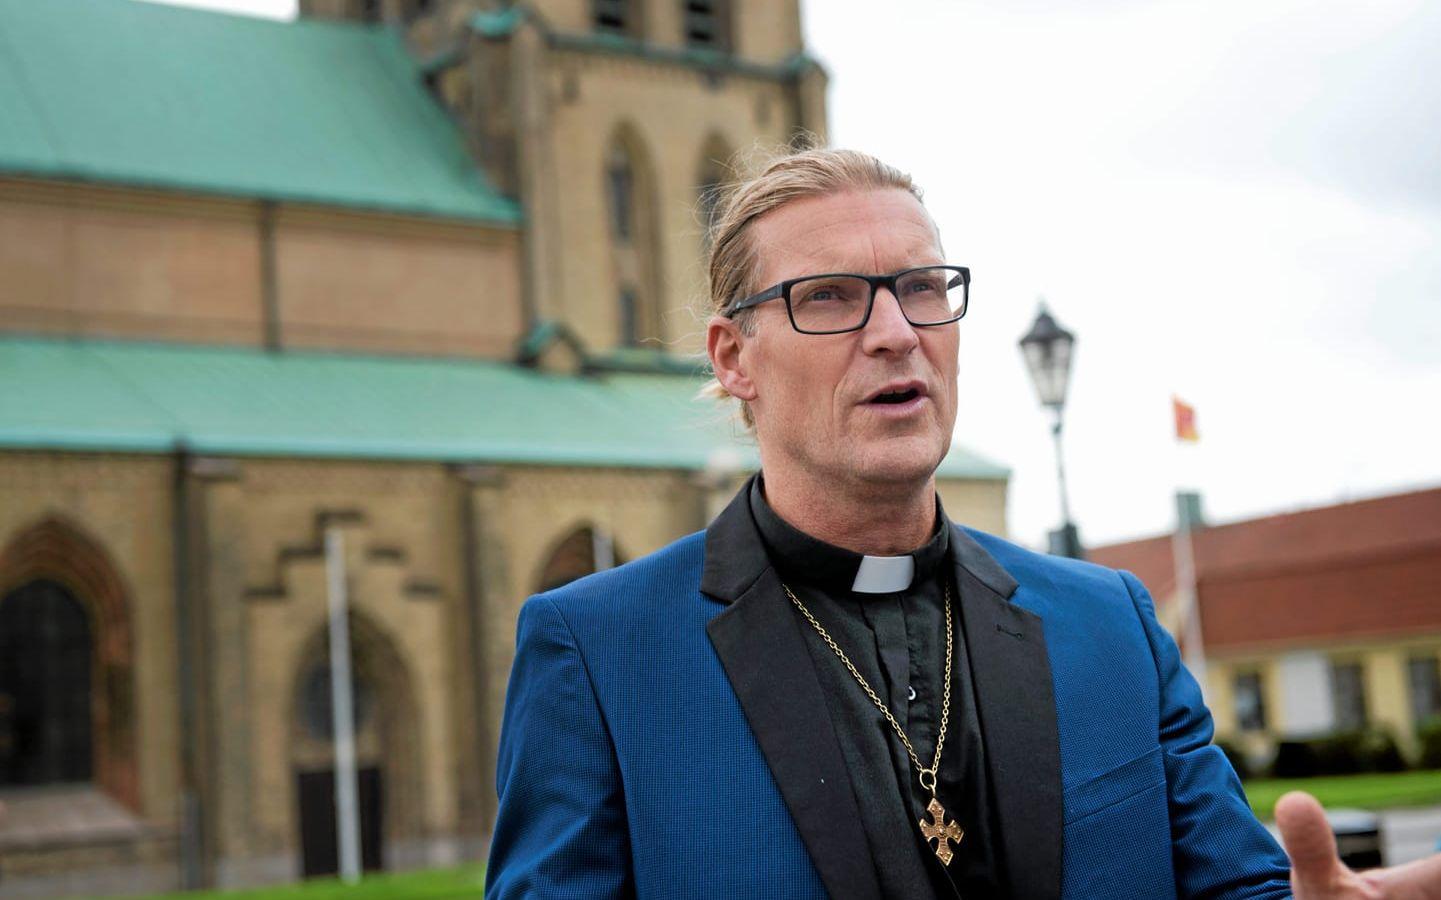 Att konvertera till kristendom innebär inte att man som flykting automatiskt får asyl i Sverige, säger Magnus Aasa.